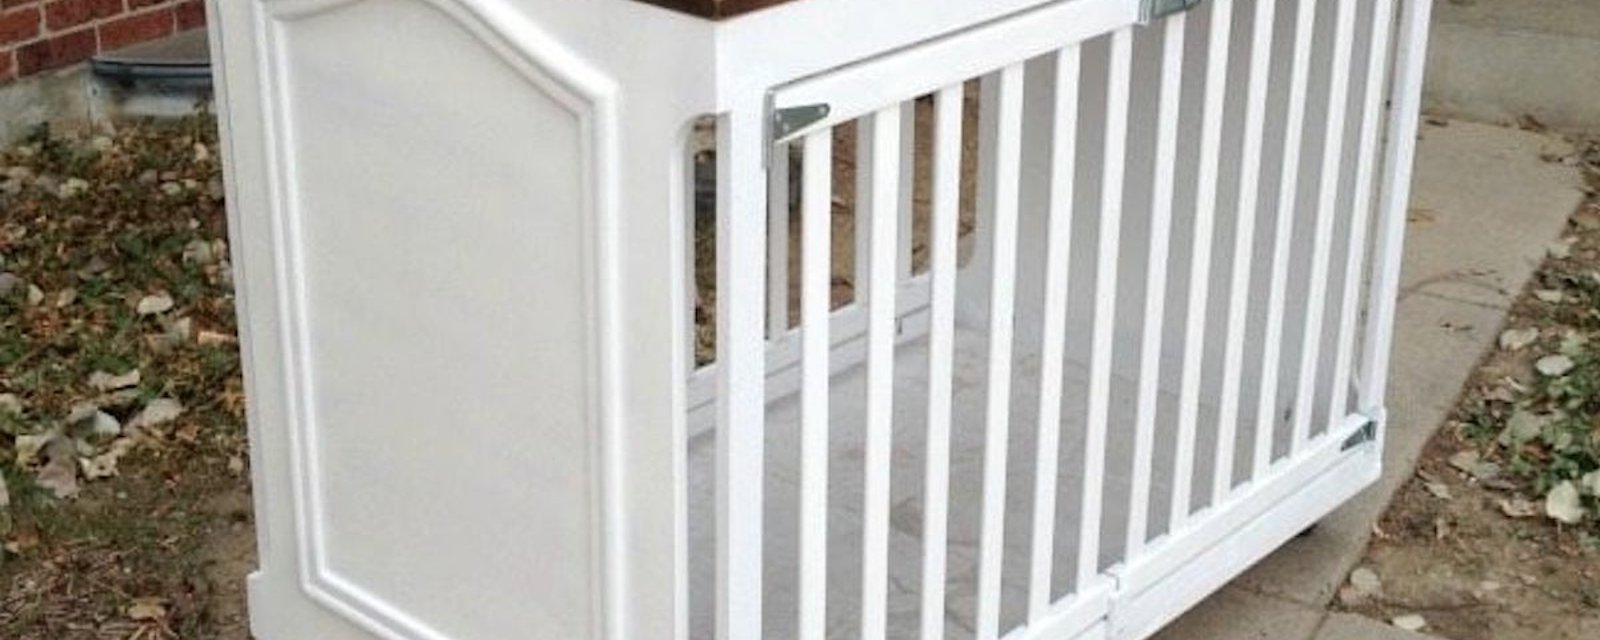 Comment récupérer un lit de bébé pour faire une superbe cage pour chien